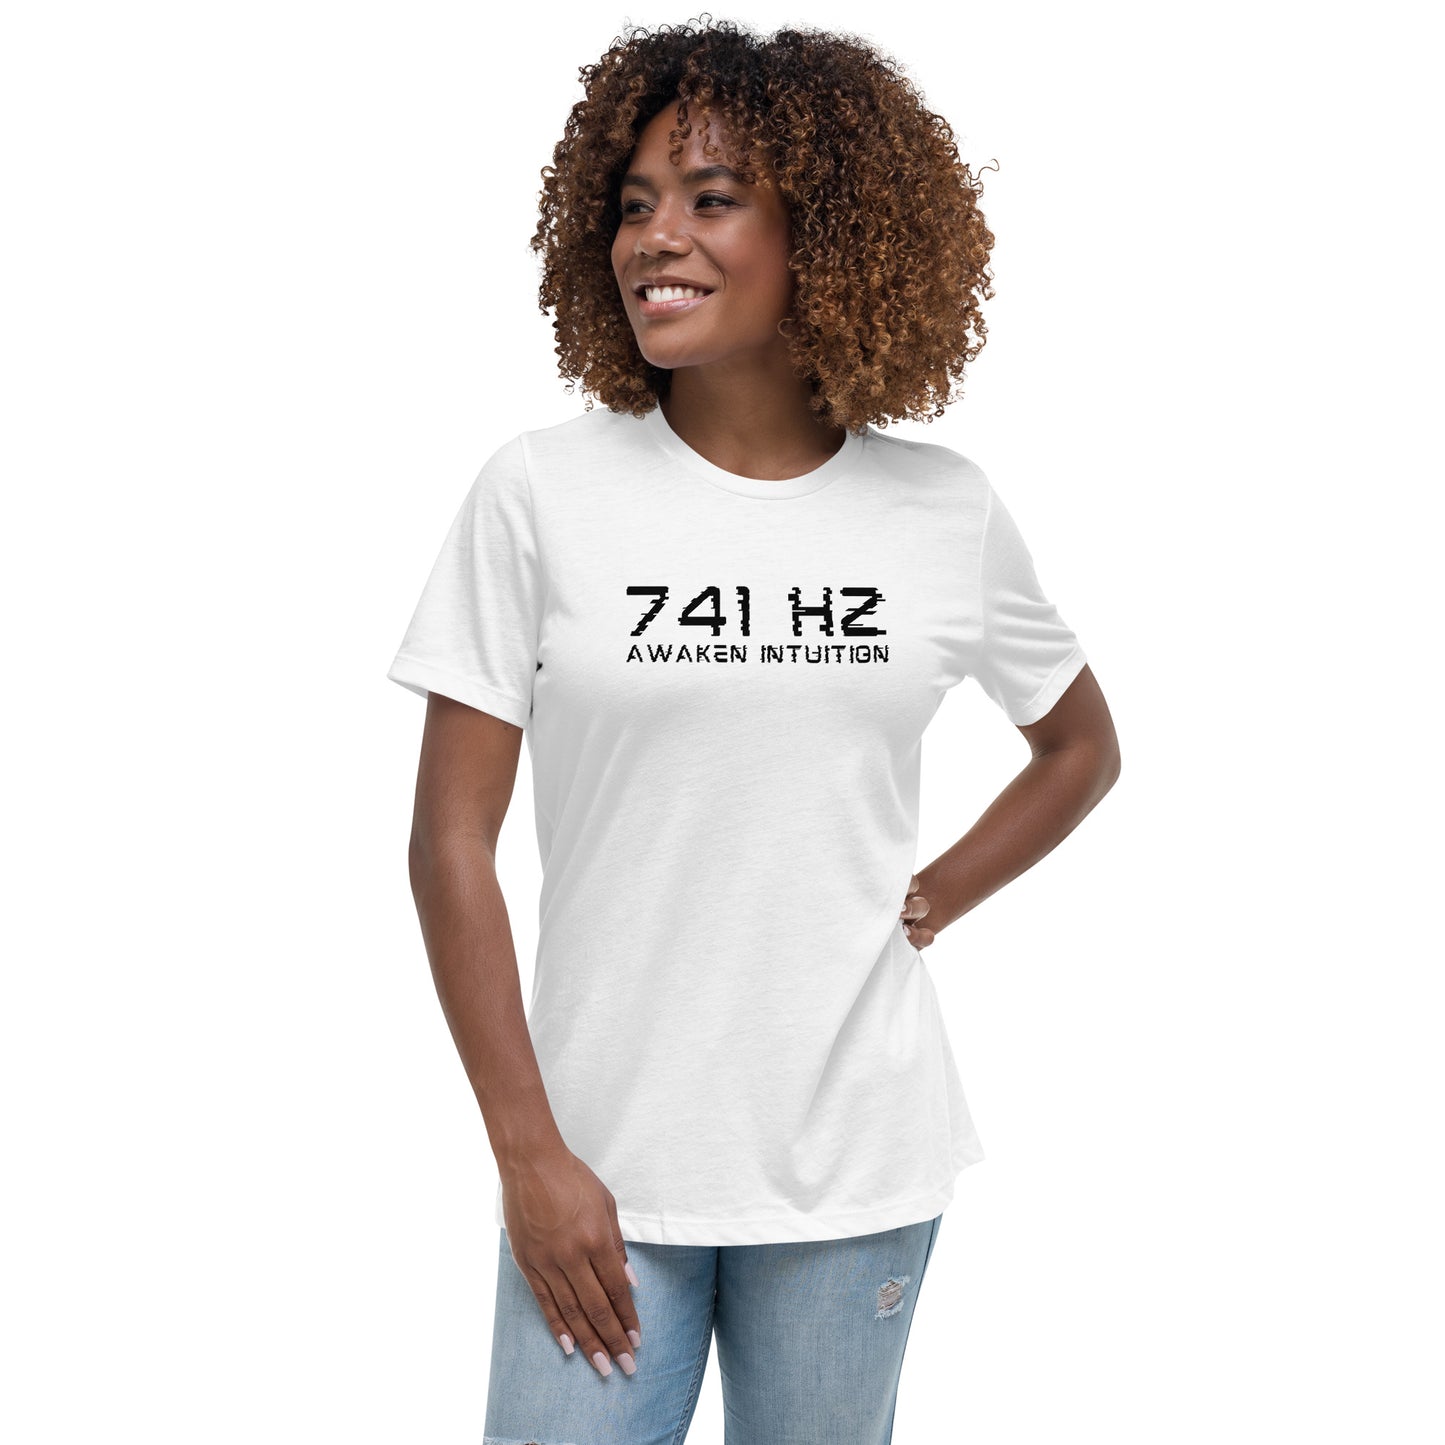 741 Hz Awaken Intuition Women's Relaxed T-Shirt